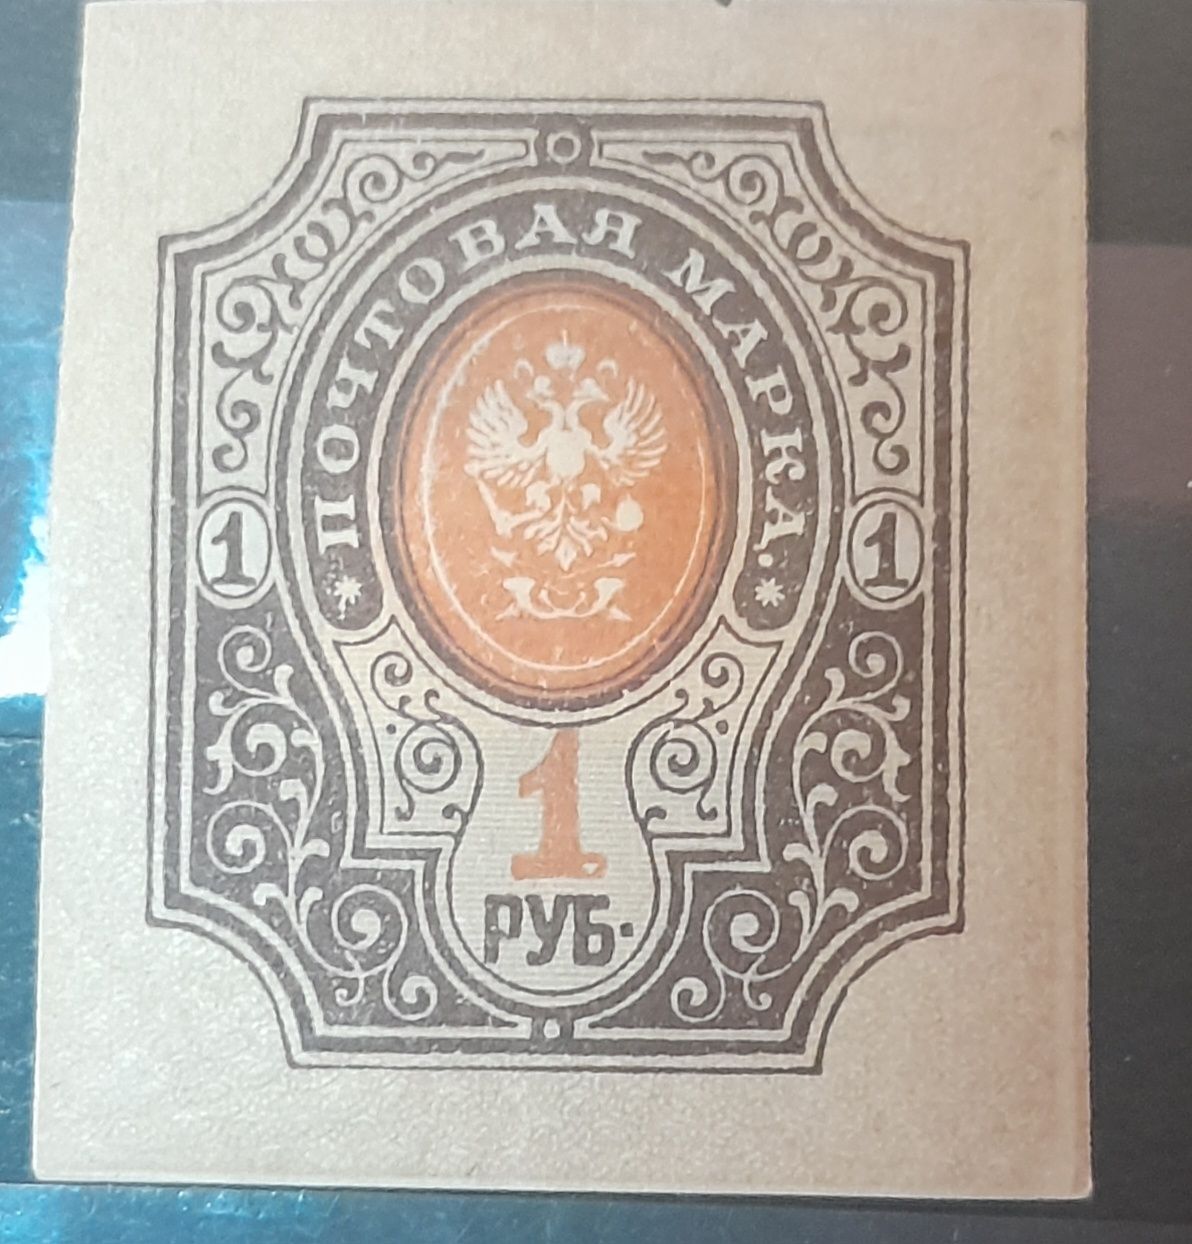 Znaczek pocztowy Imperium Rosyjskie 1917, jeden rubel